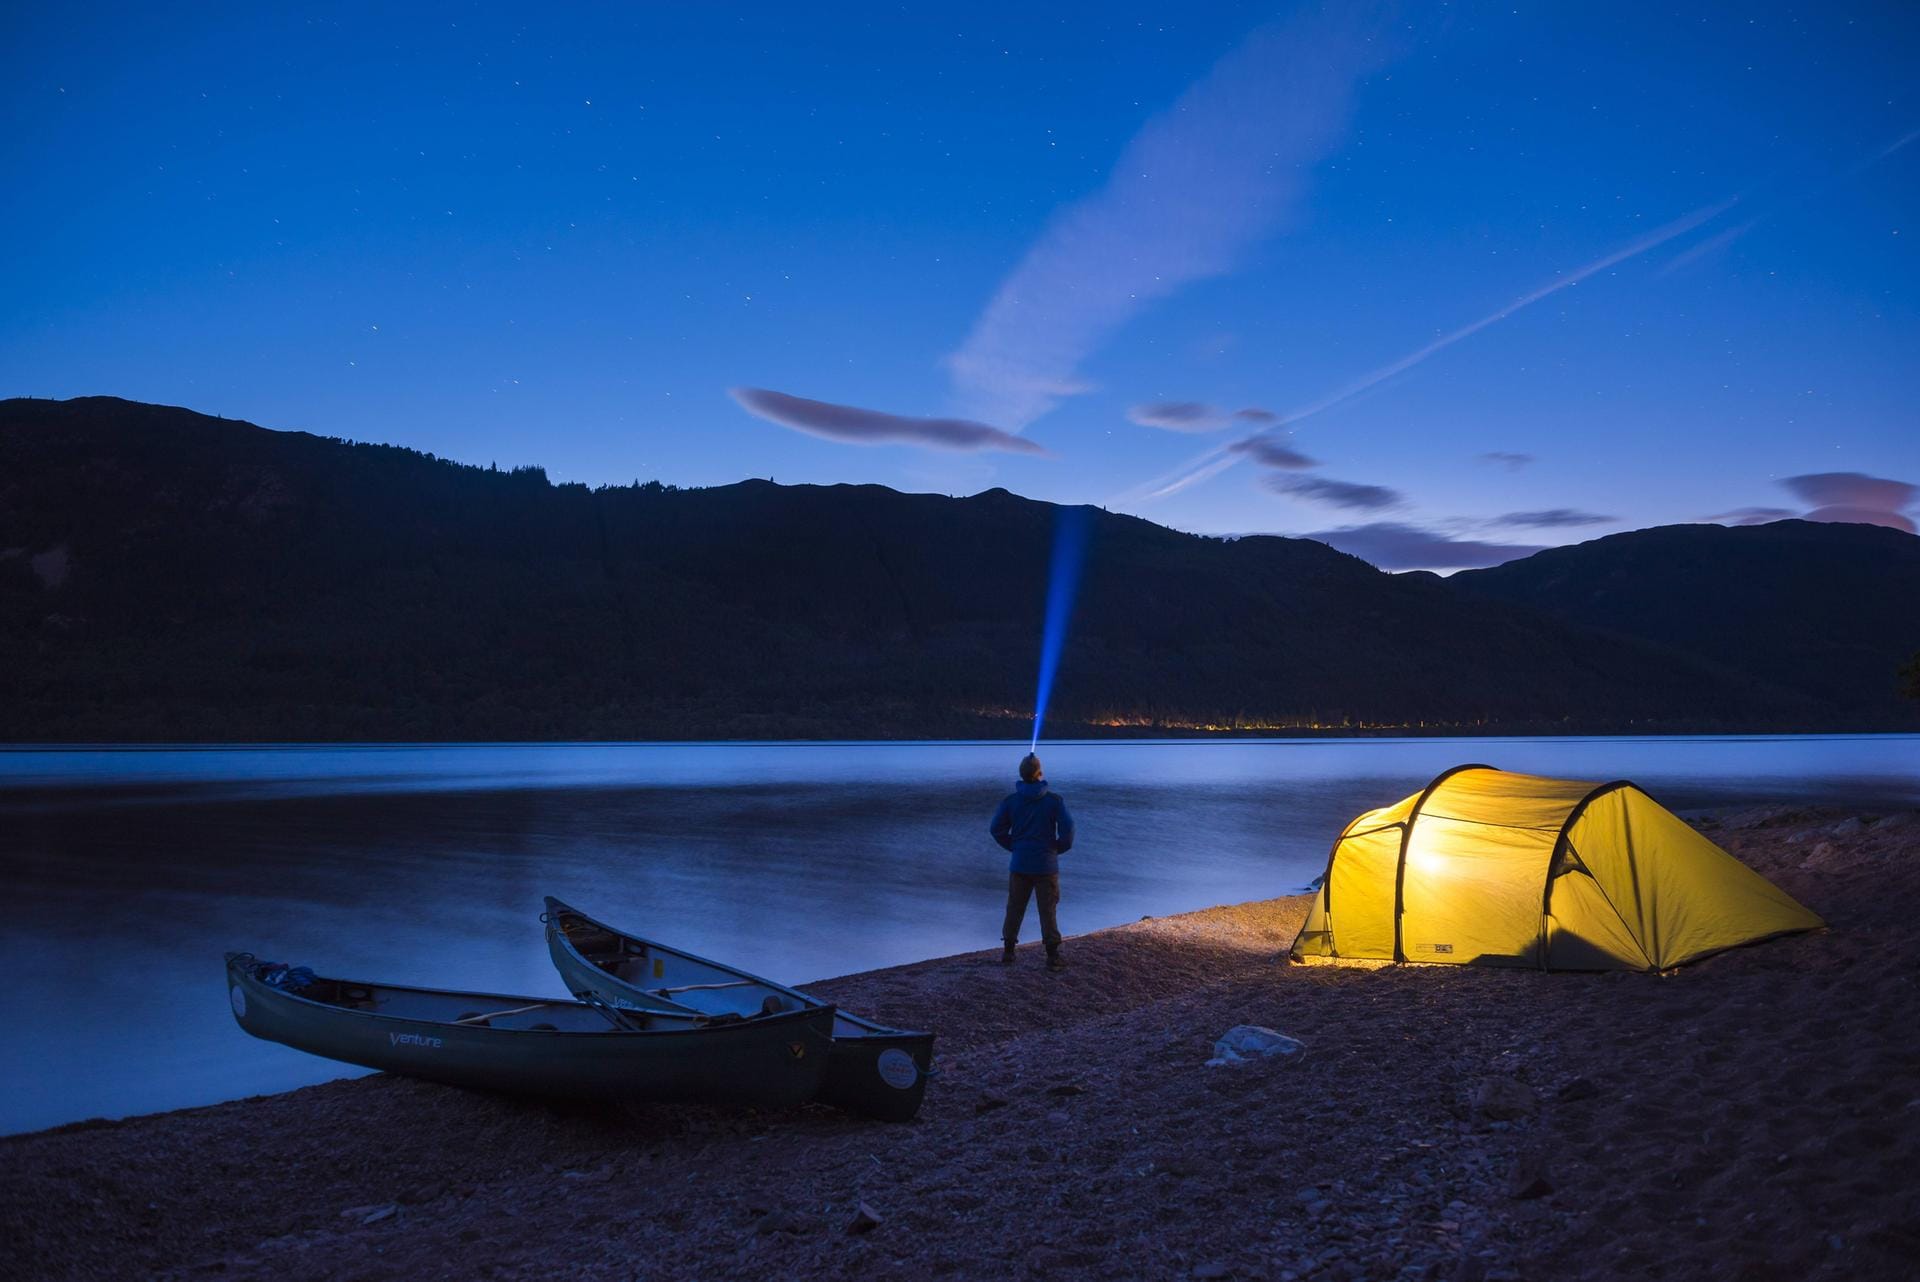 Rund um den Loch Ness befinden sich verschiedene Campingplätze.